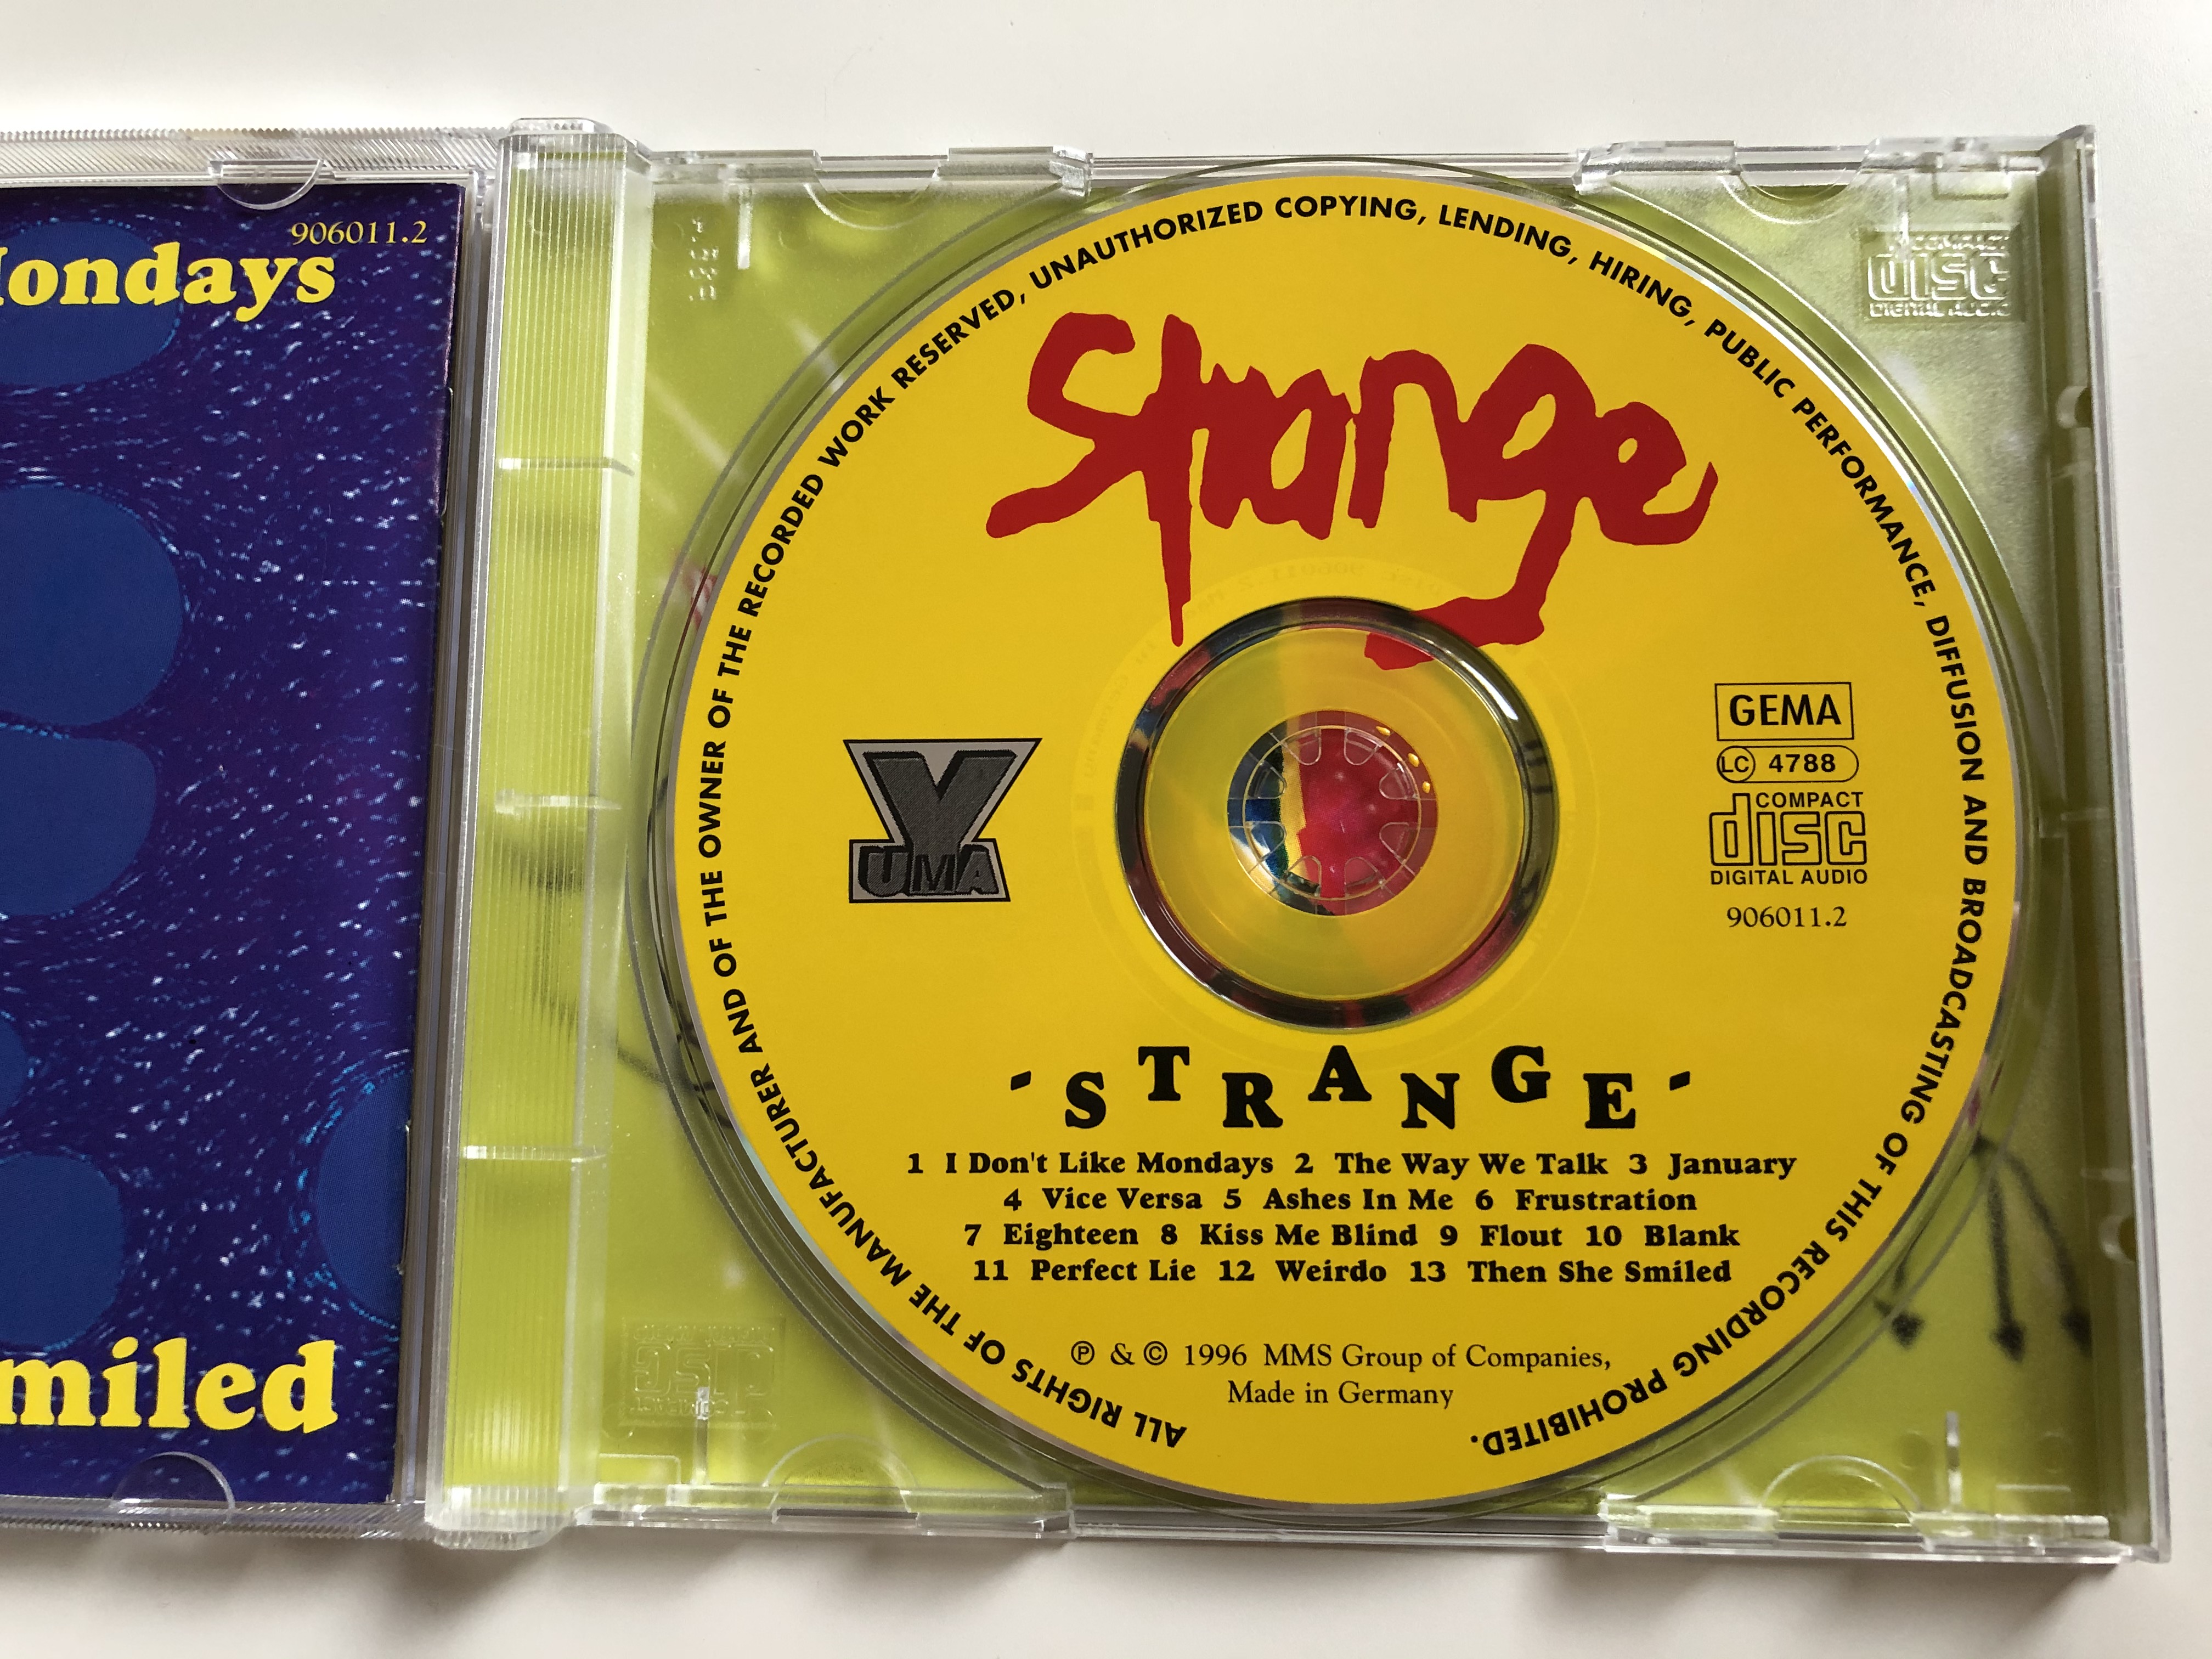 strange-mms-audio-cd-1996-906011-4-.jpg